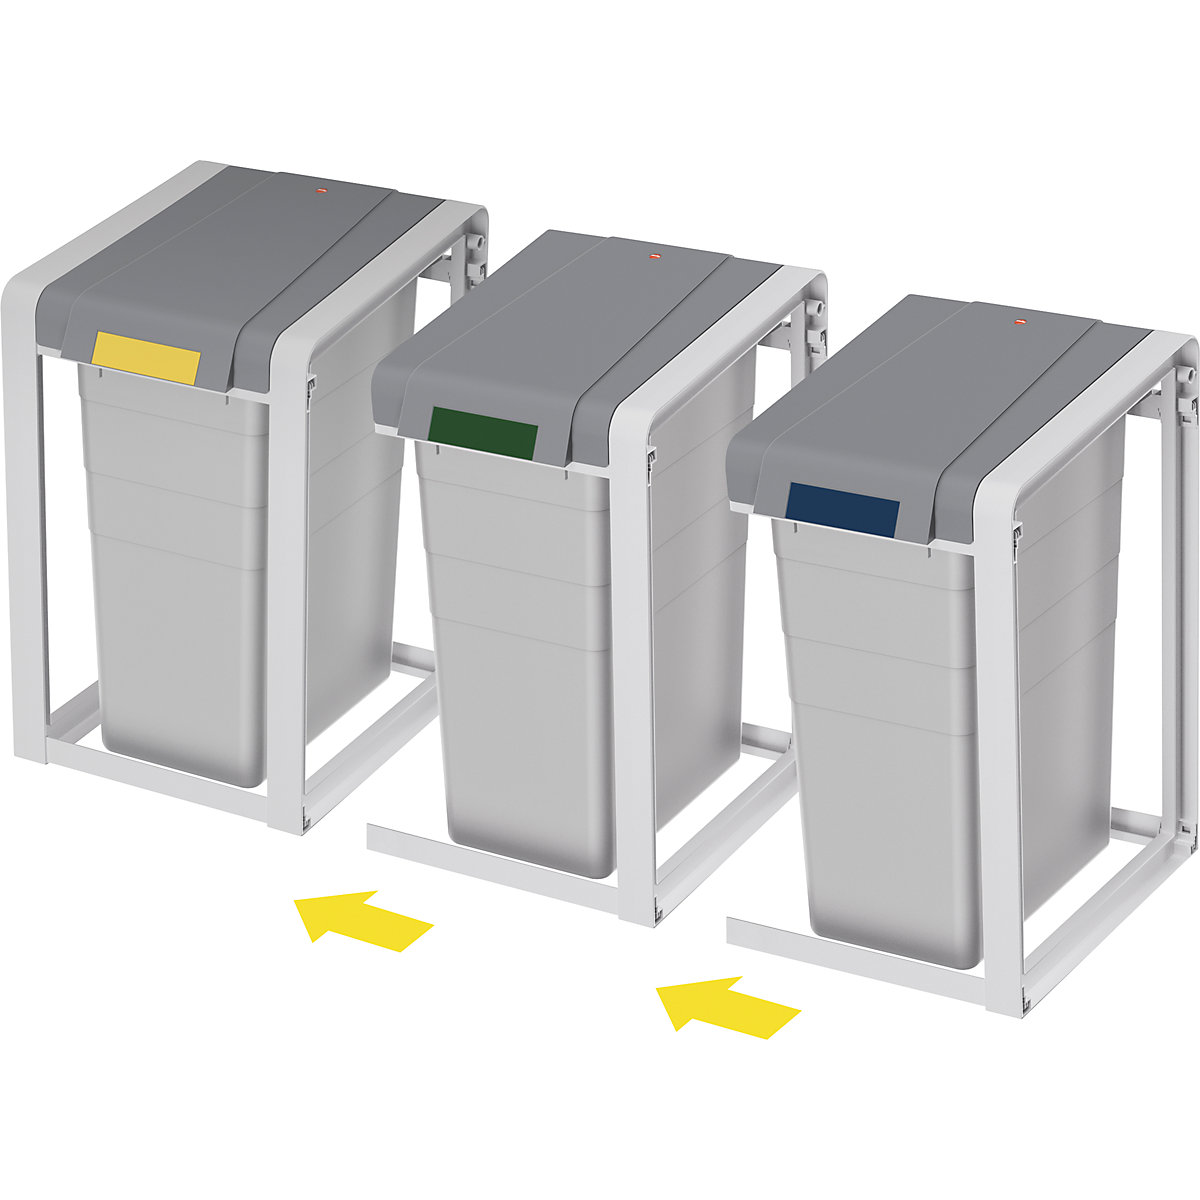 Sistema modular de recipientes para separar materiales ProfiLine, ecológico y flexible – Hailo (Imagen del producto 3)-2